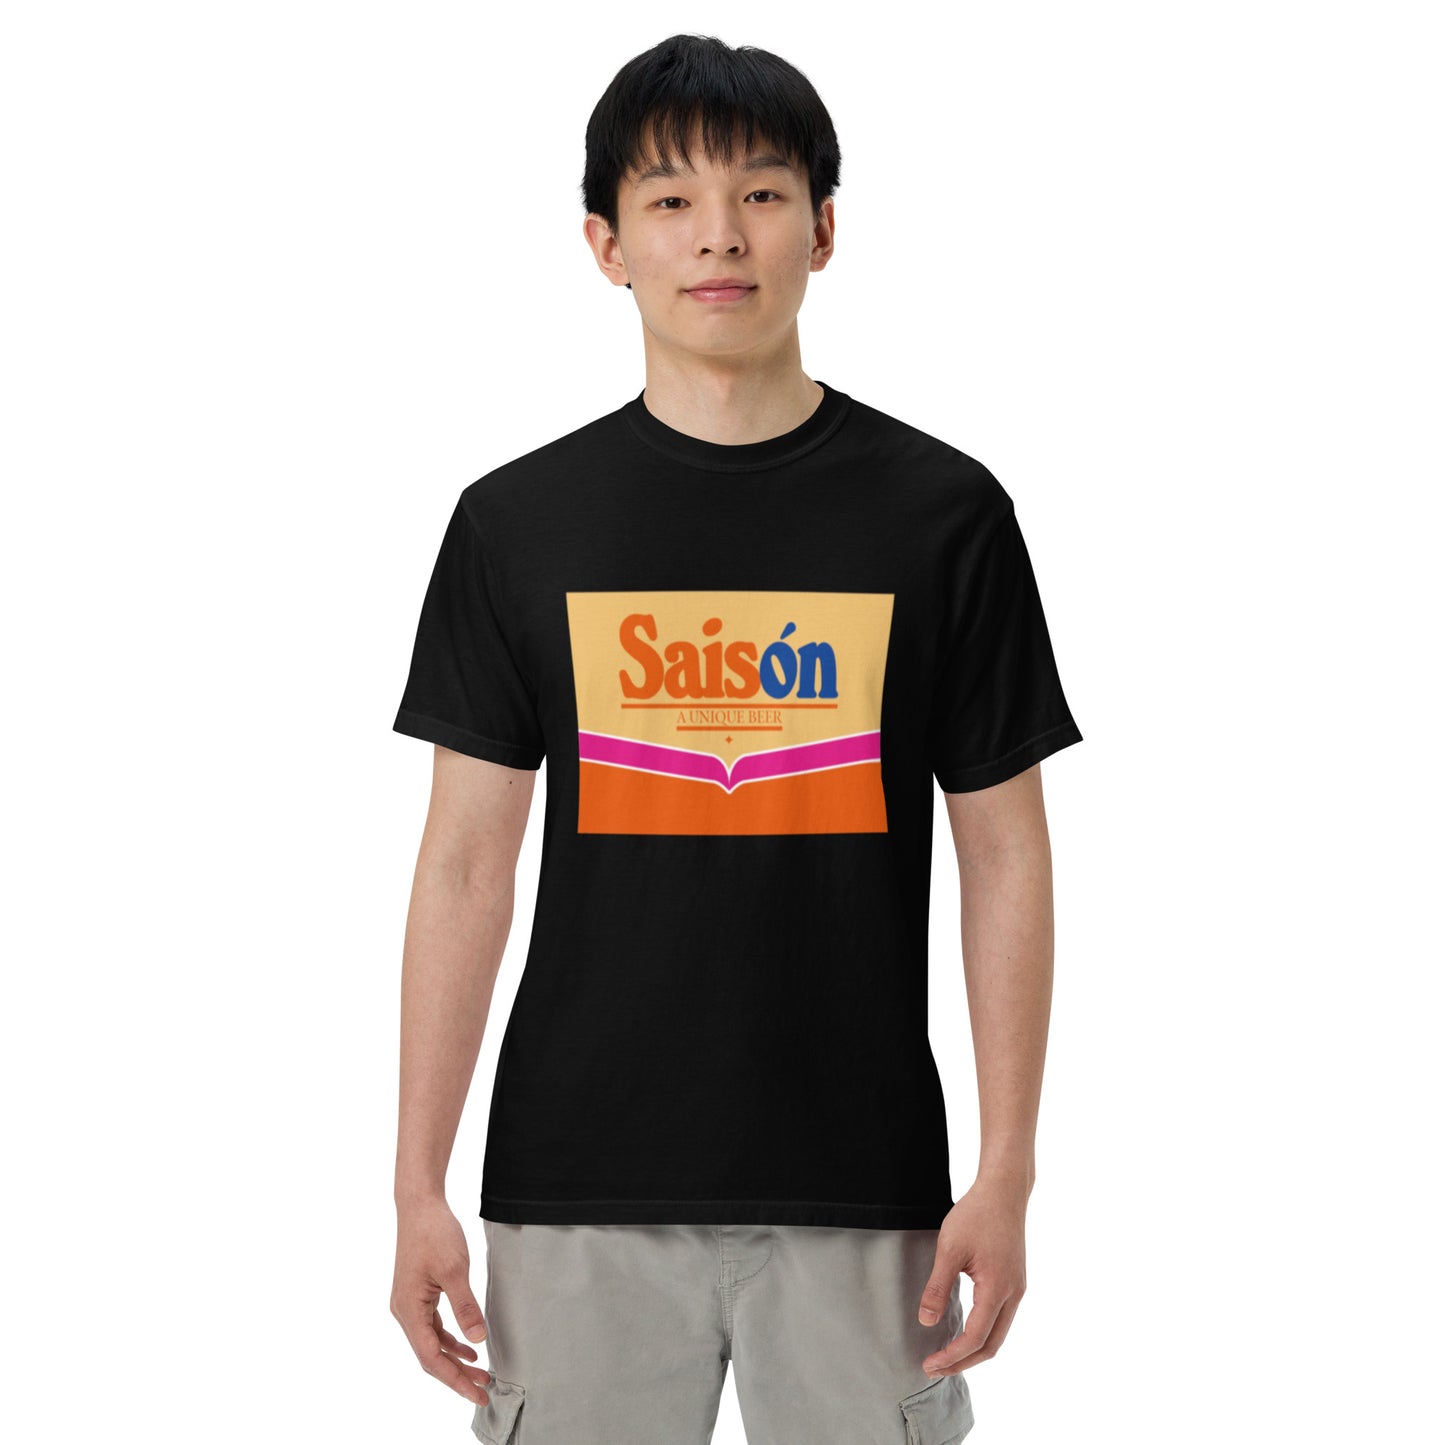 Saison comfort colors heavyweight t-shirt